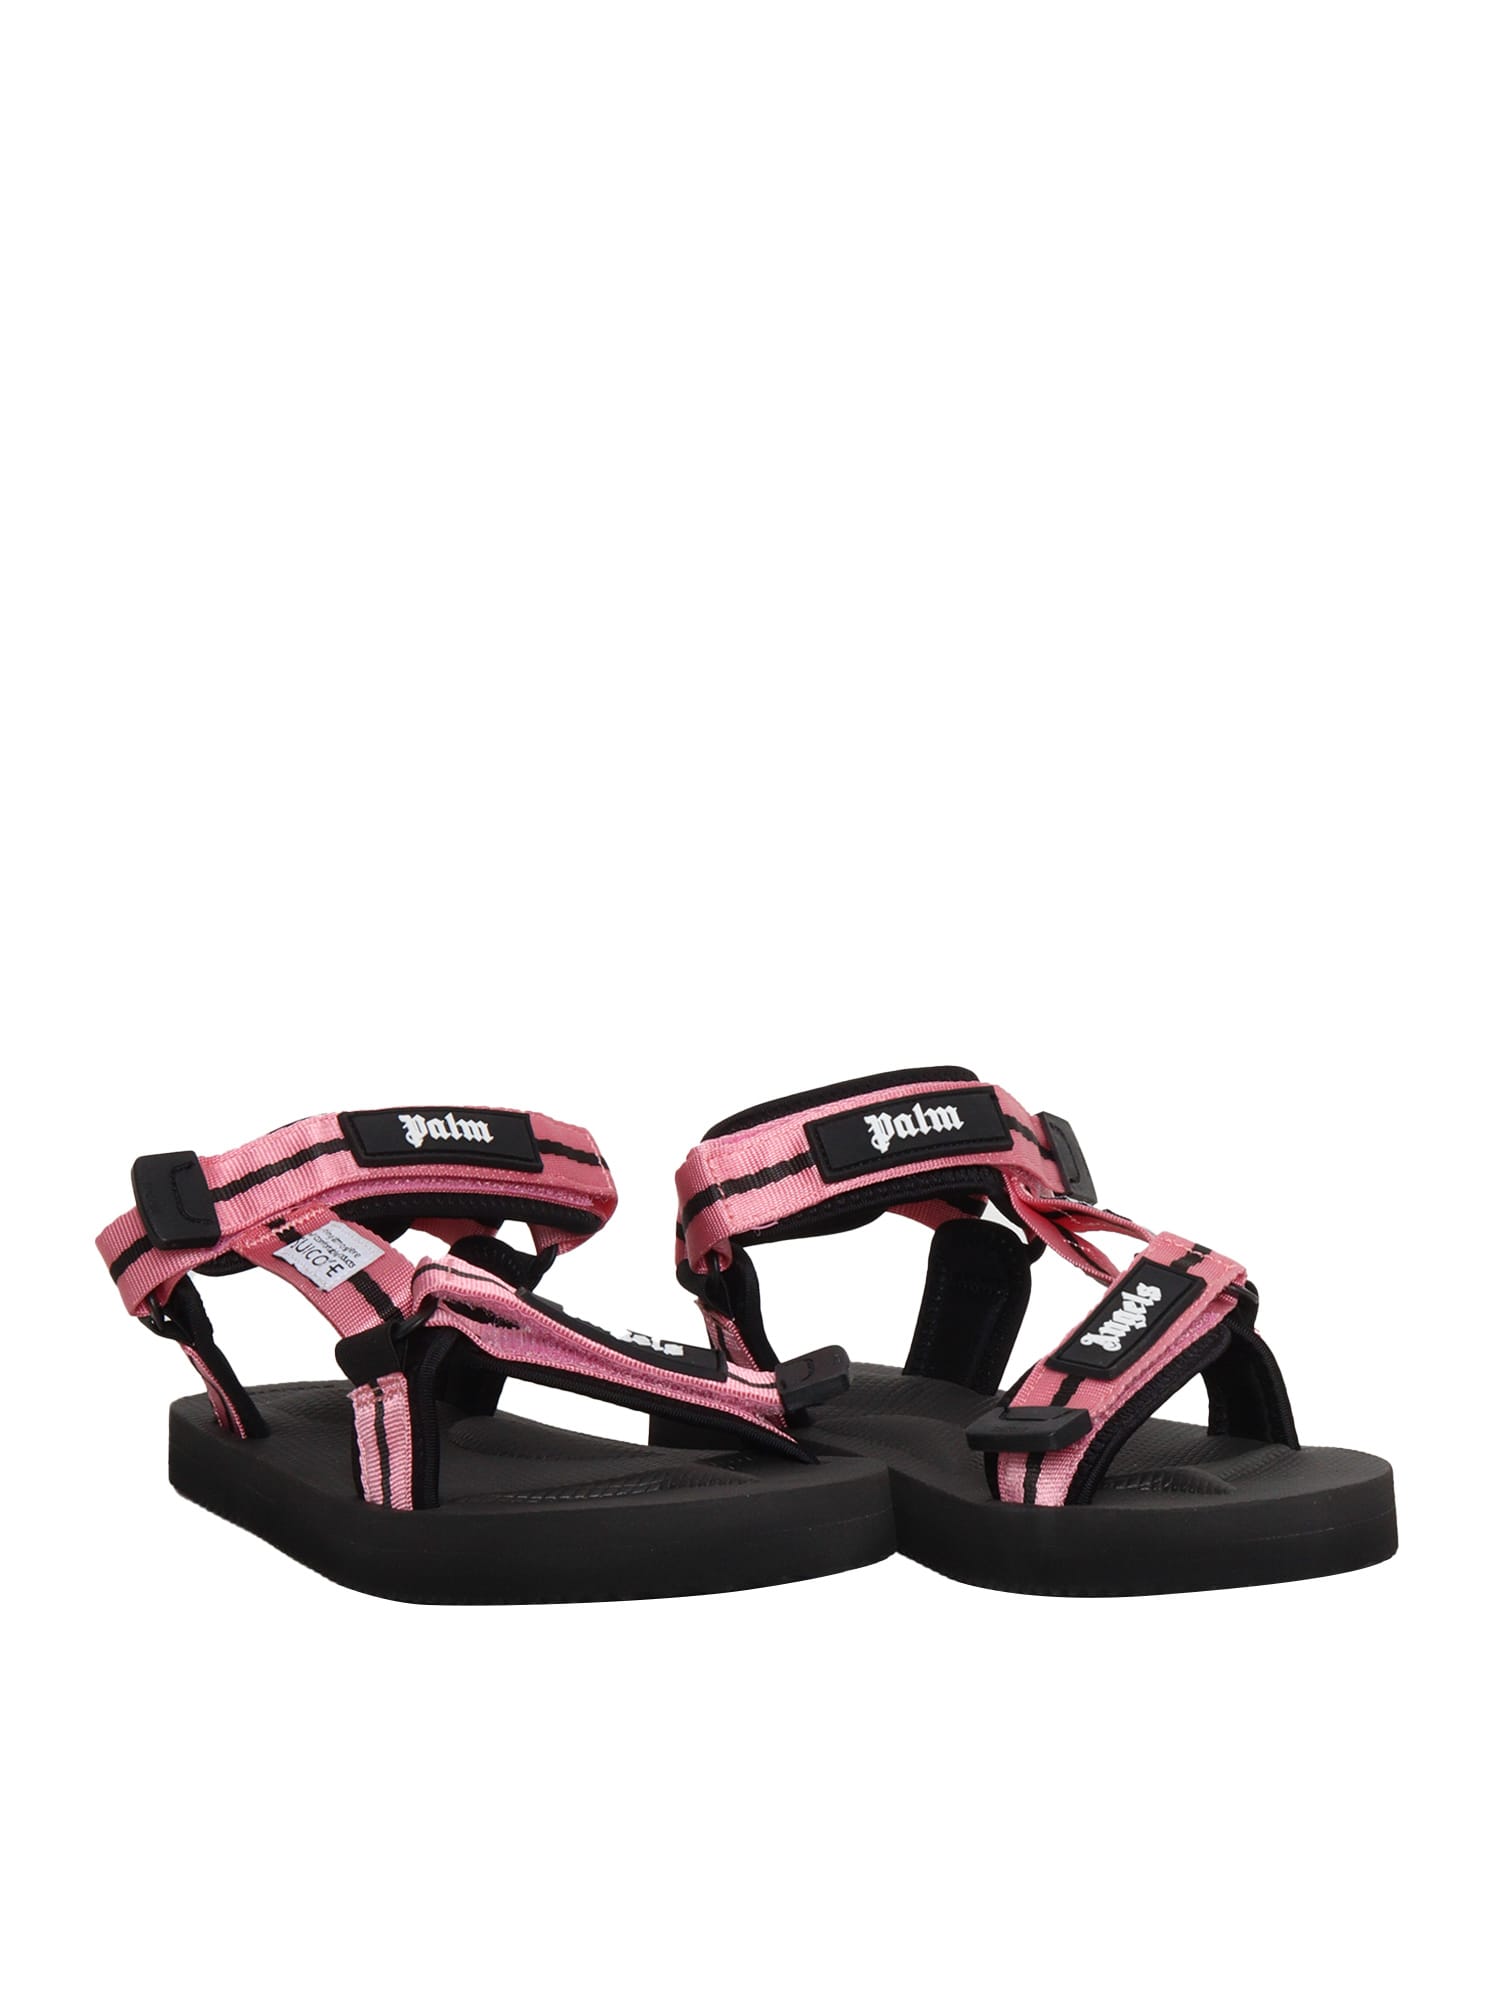 Shop Palm Angels Pink Sandals